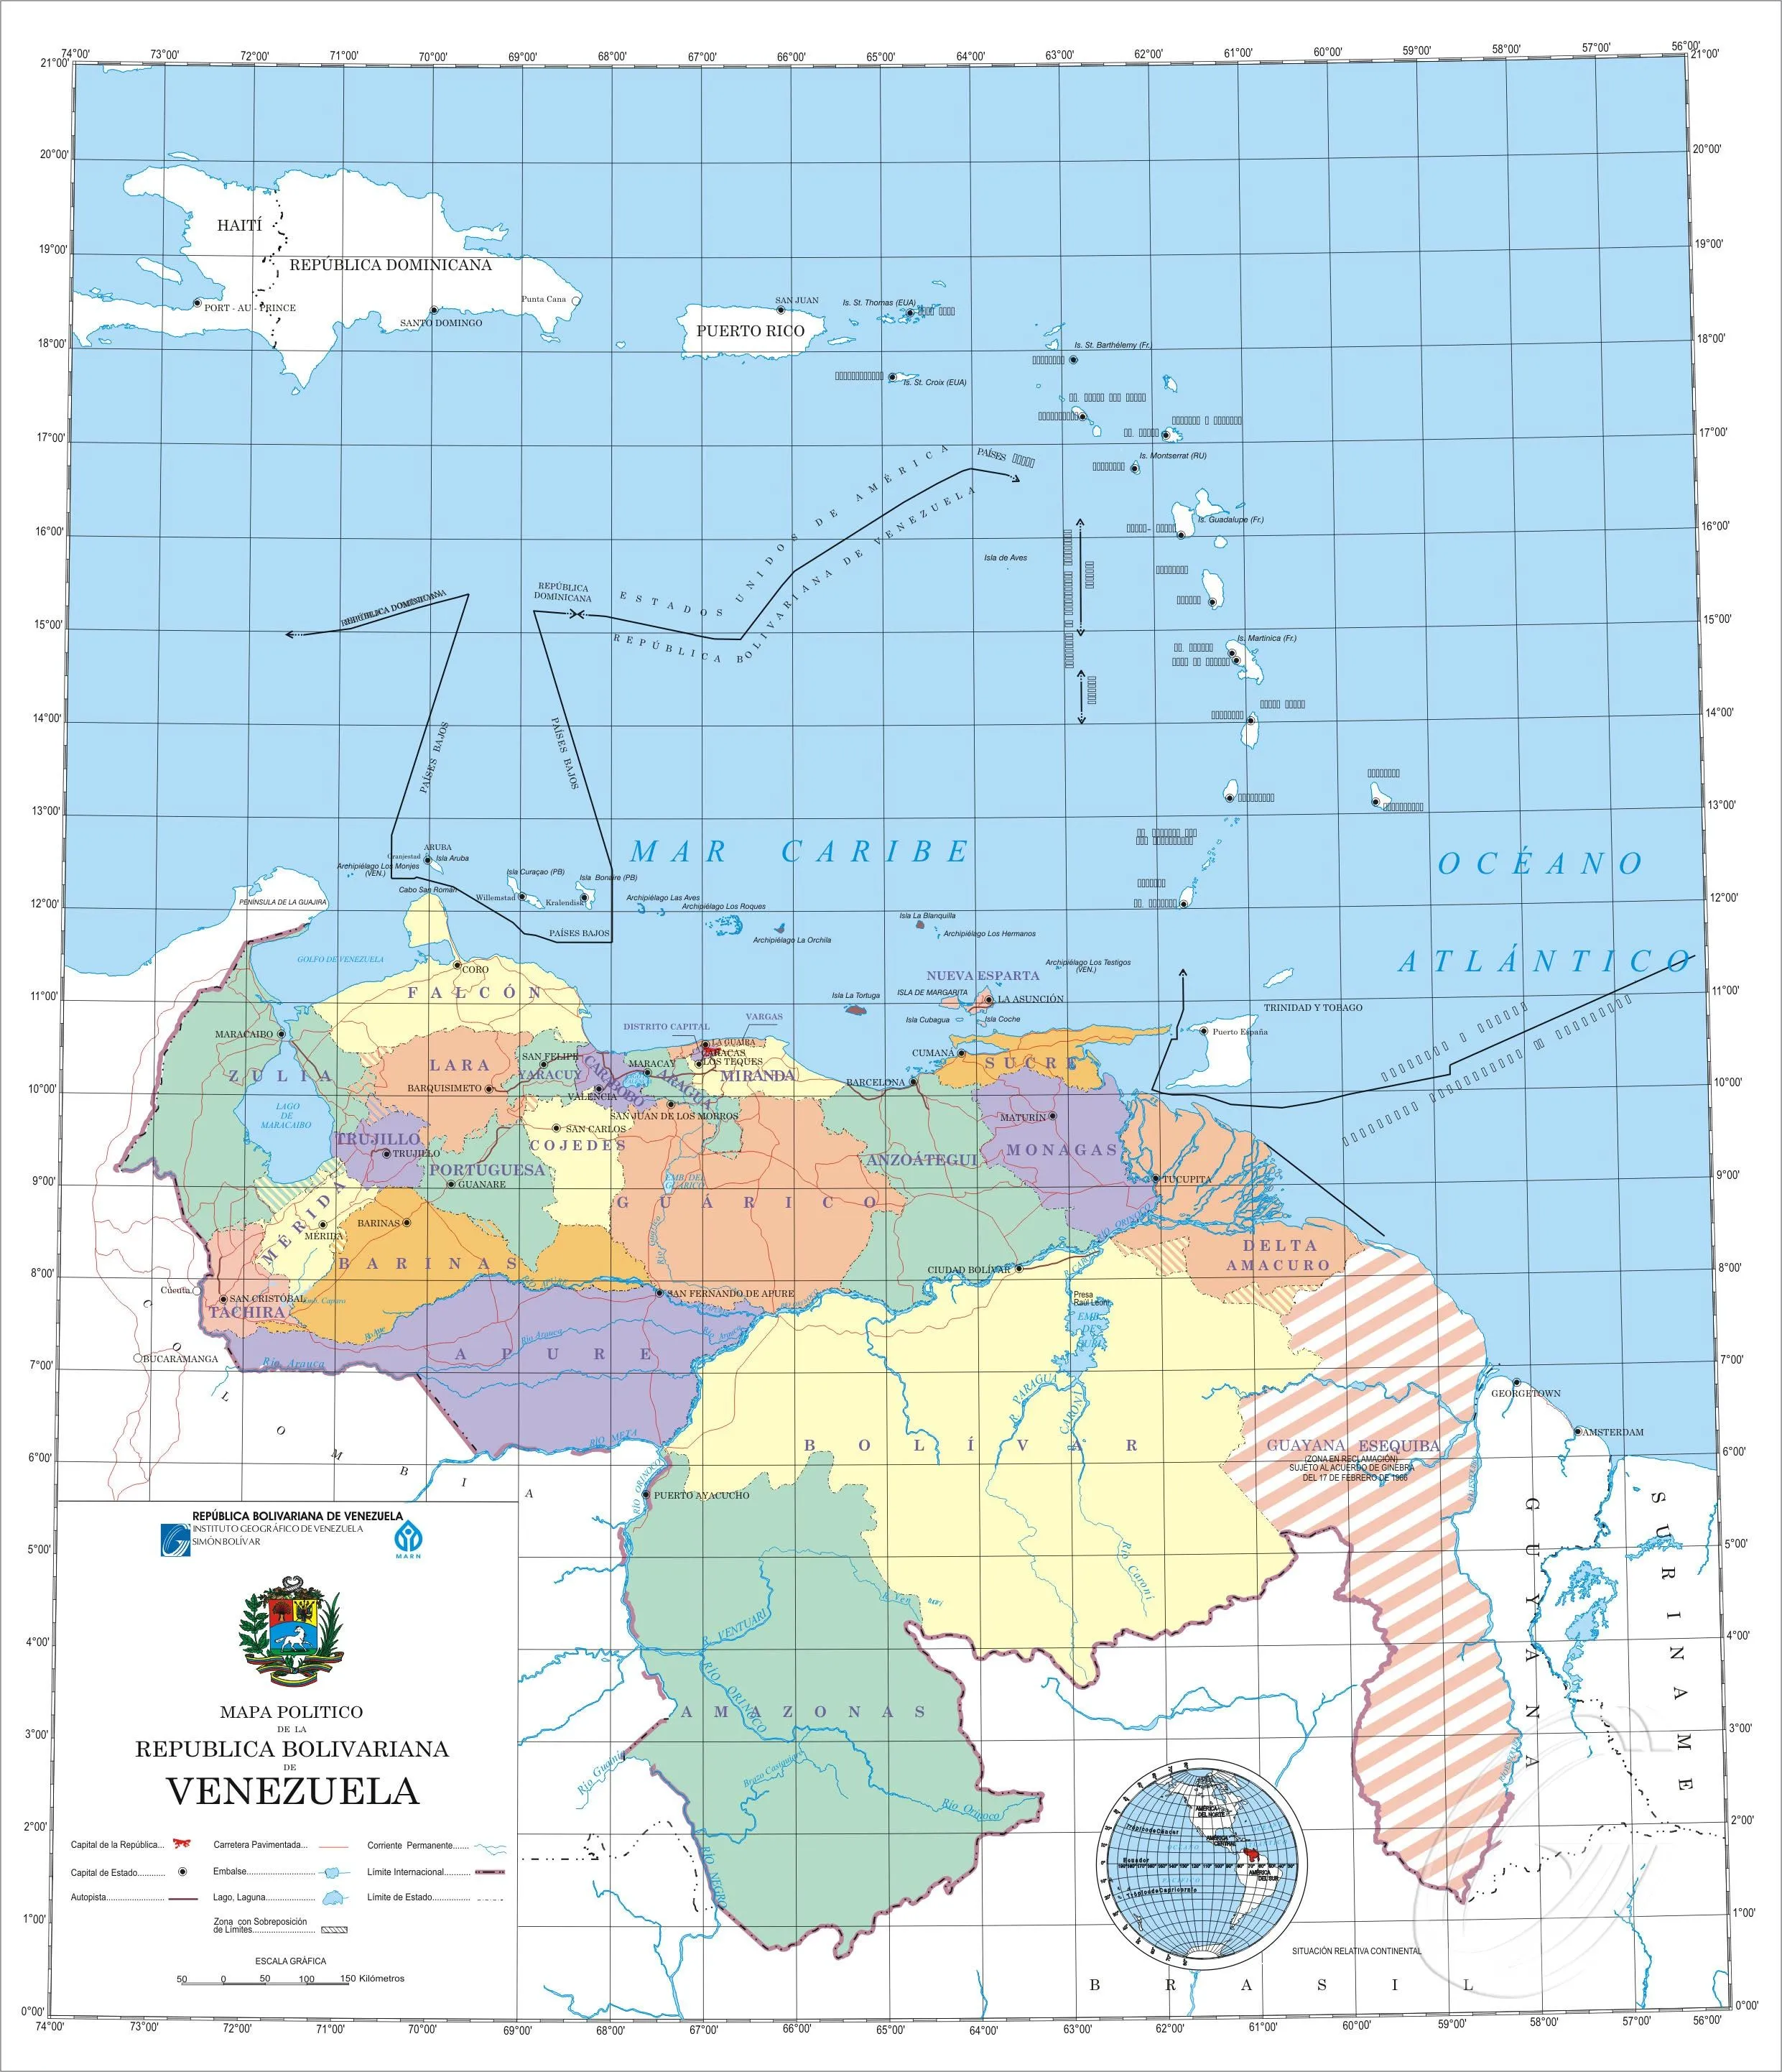 Hipótesis de conflicto Venezuela-Guyana